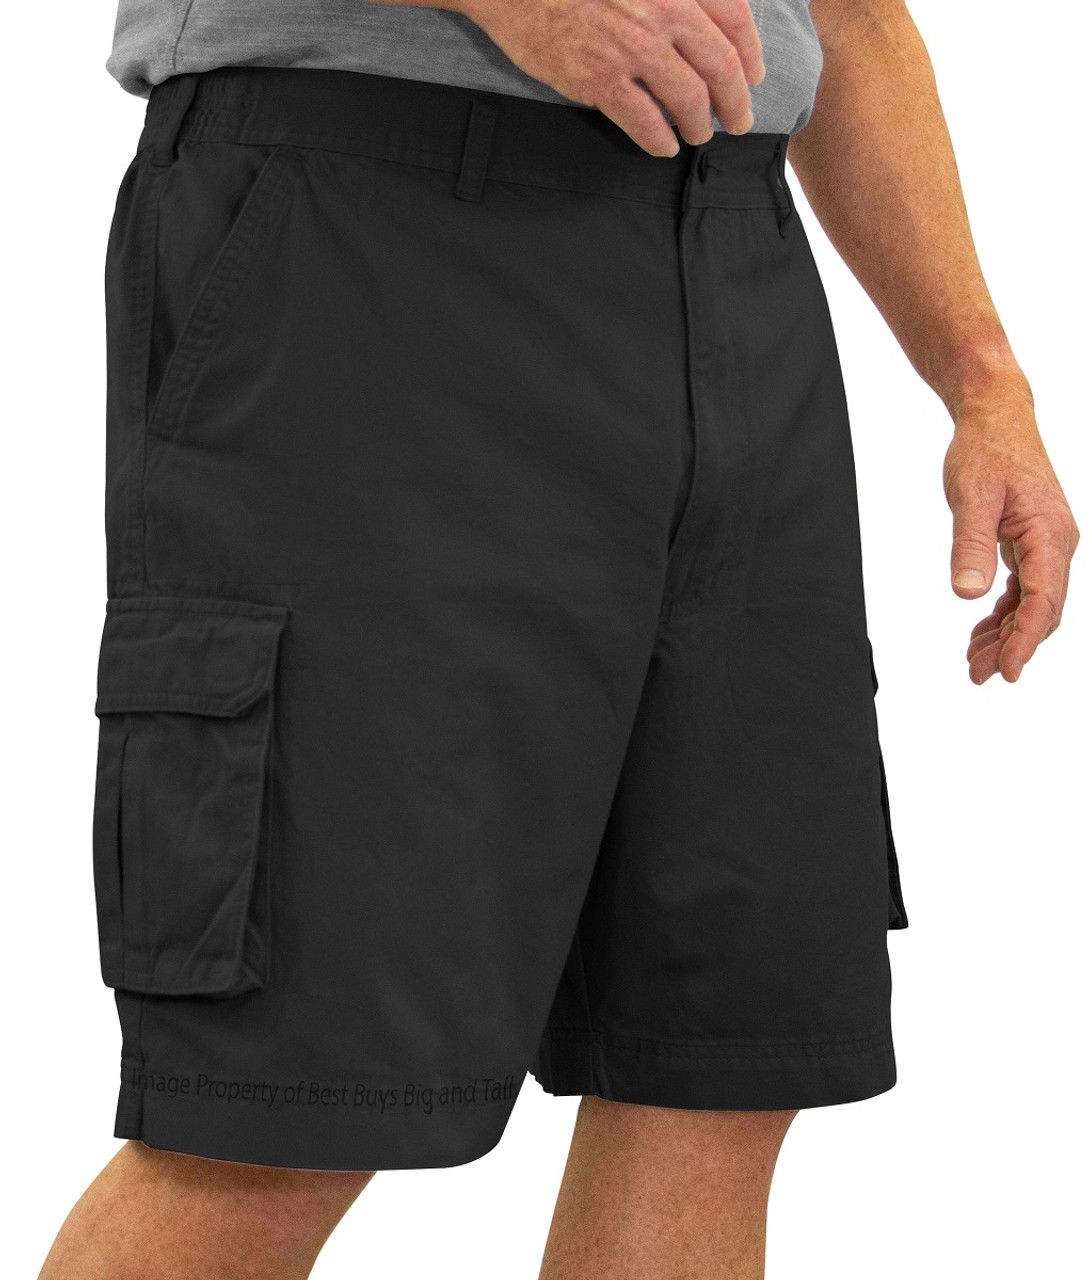 ROCXL Big & Tall Men's Cargo Pants Expandable Waist 100% Cotton Sizes 42 -  68